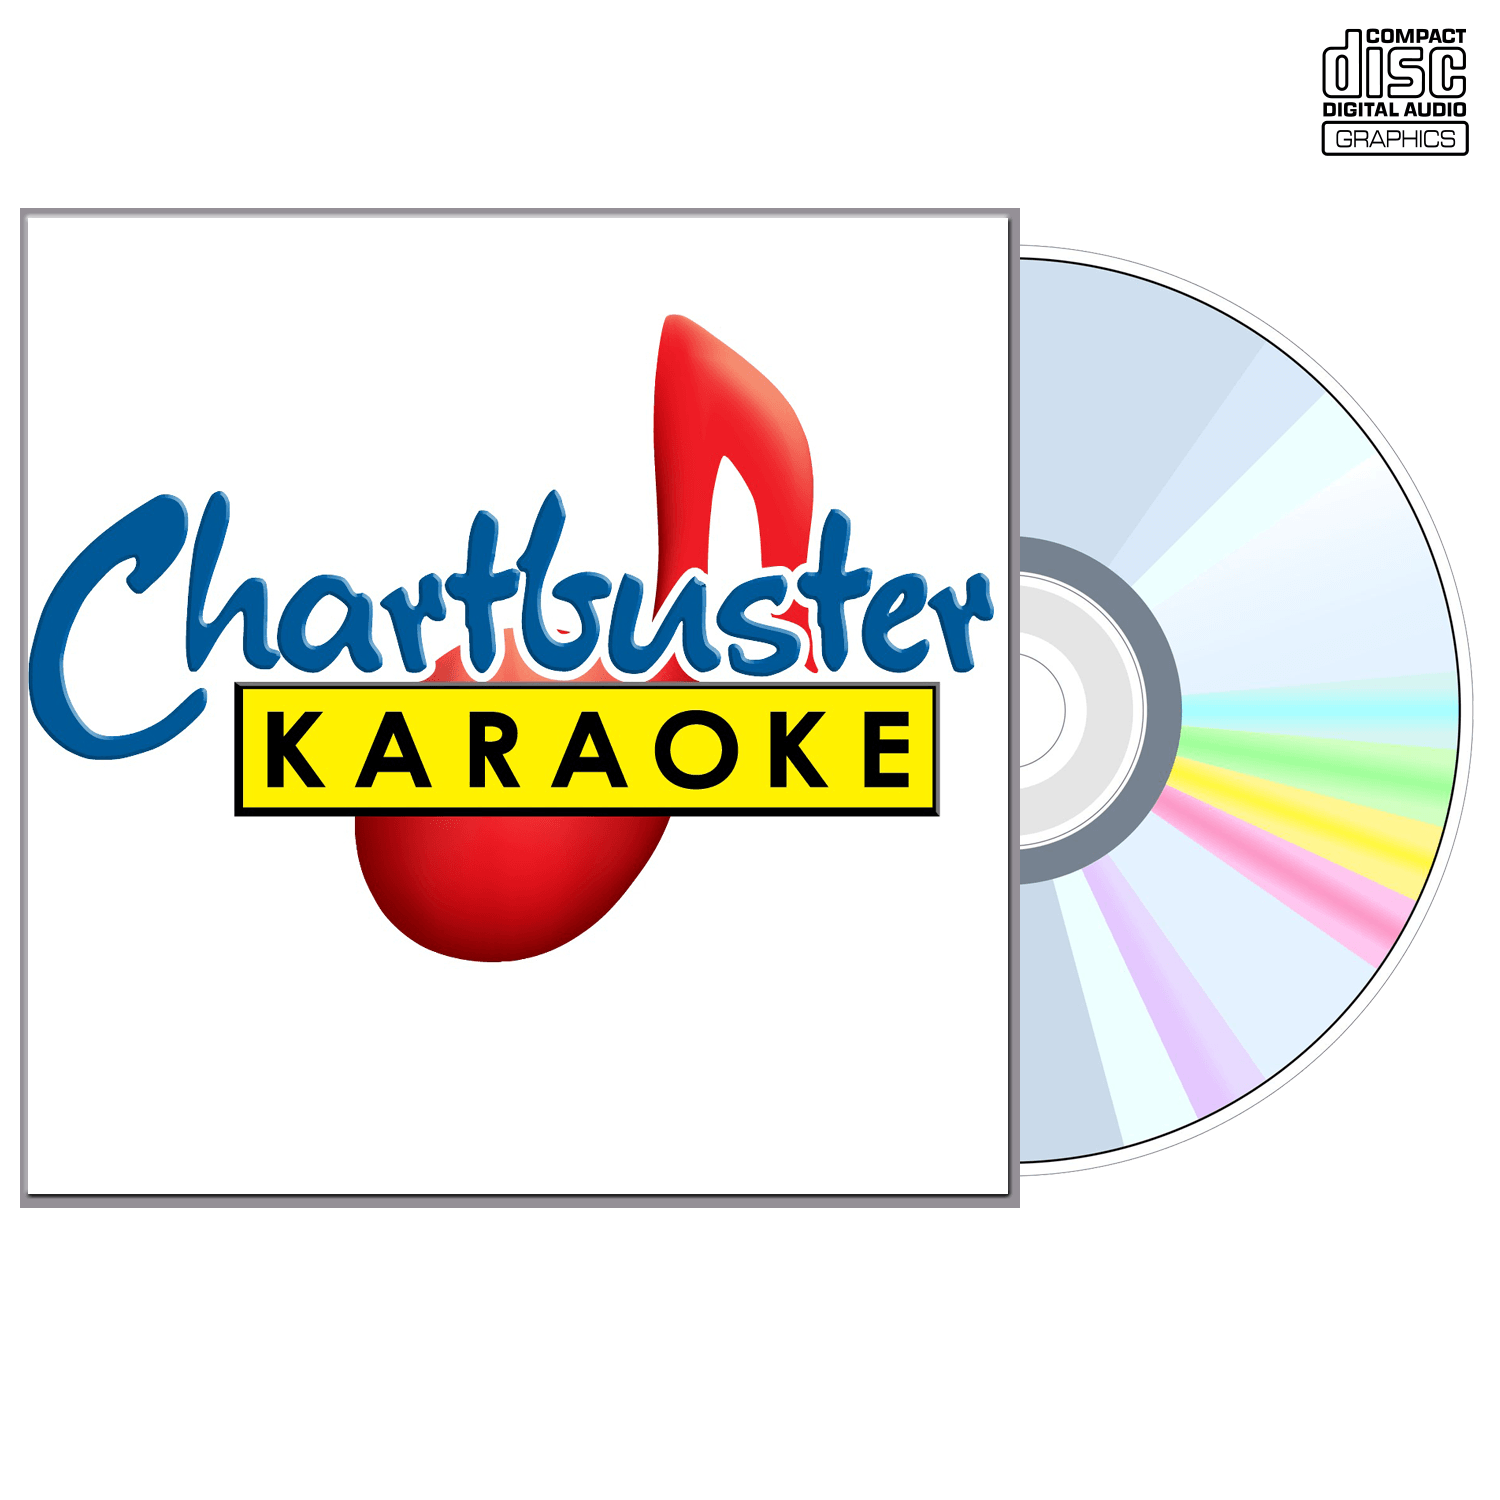 After The Beatles - CD+G - Chartbuster Karaoke - Karaoke Home Entertainment